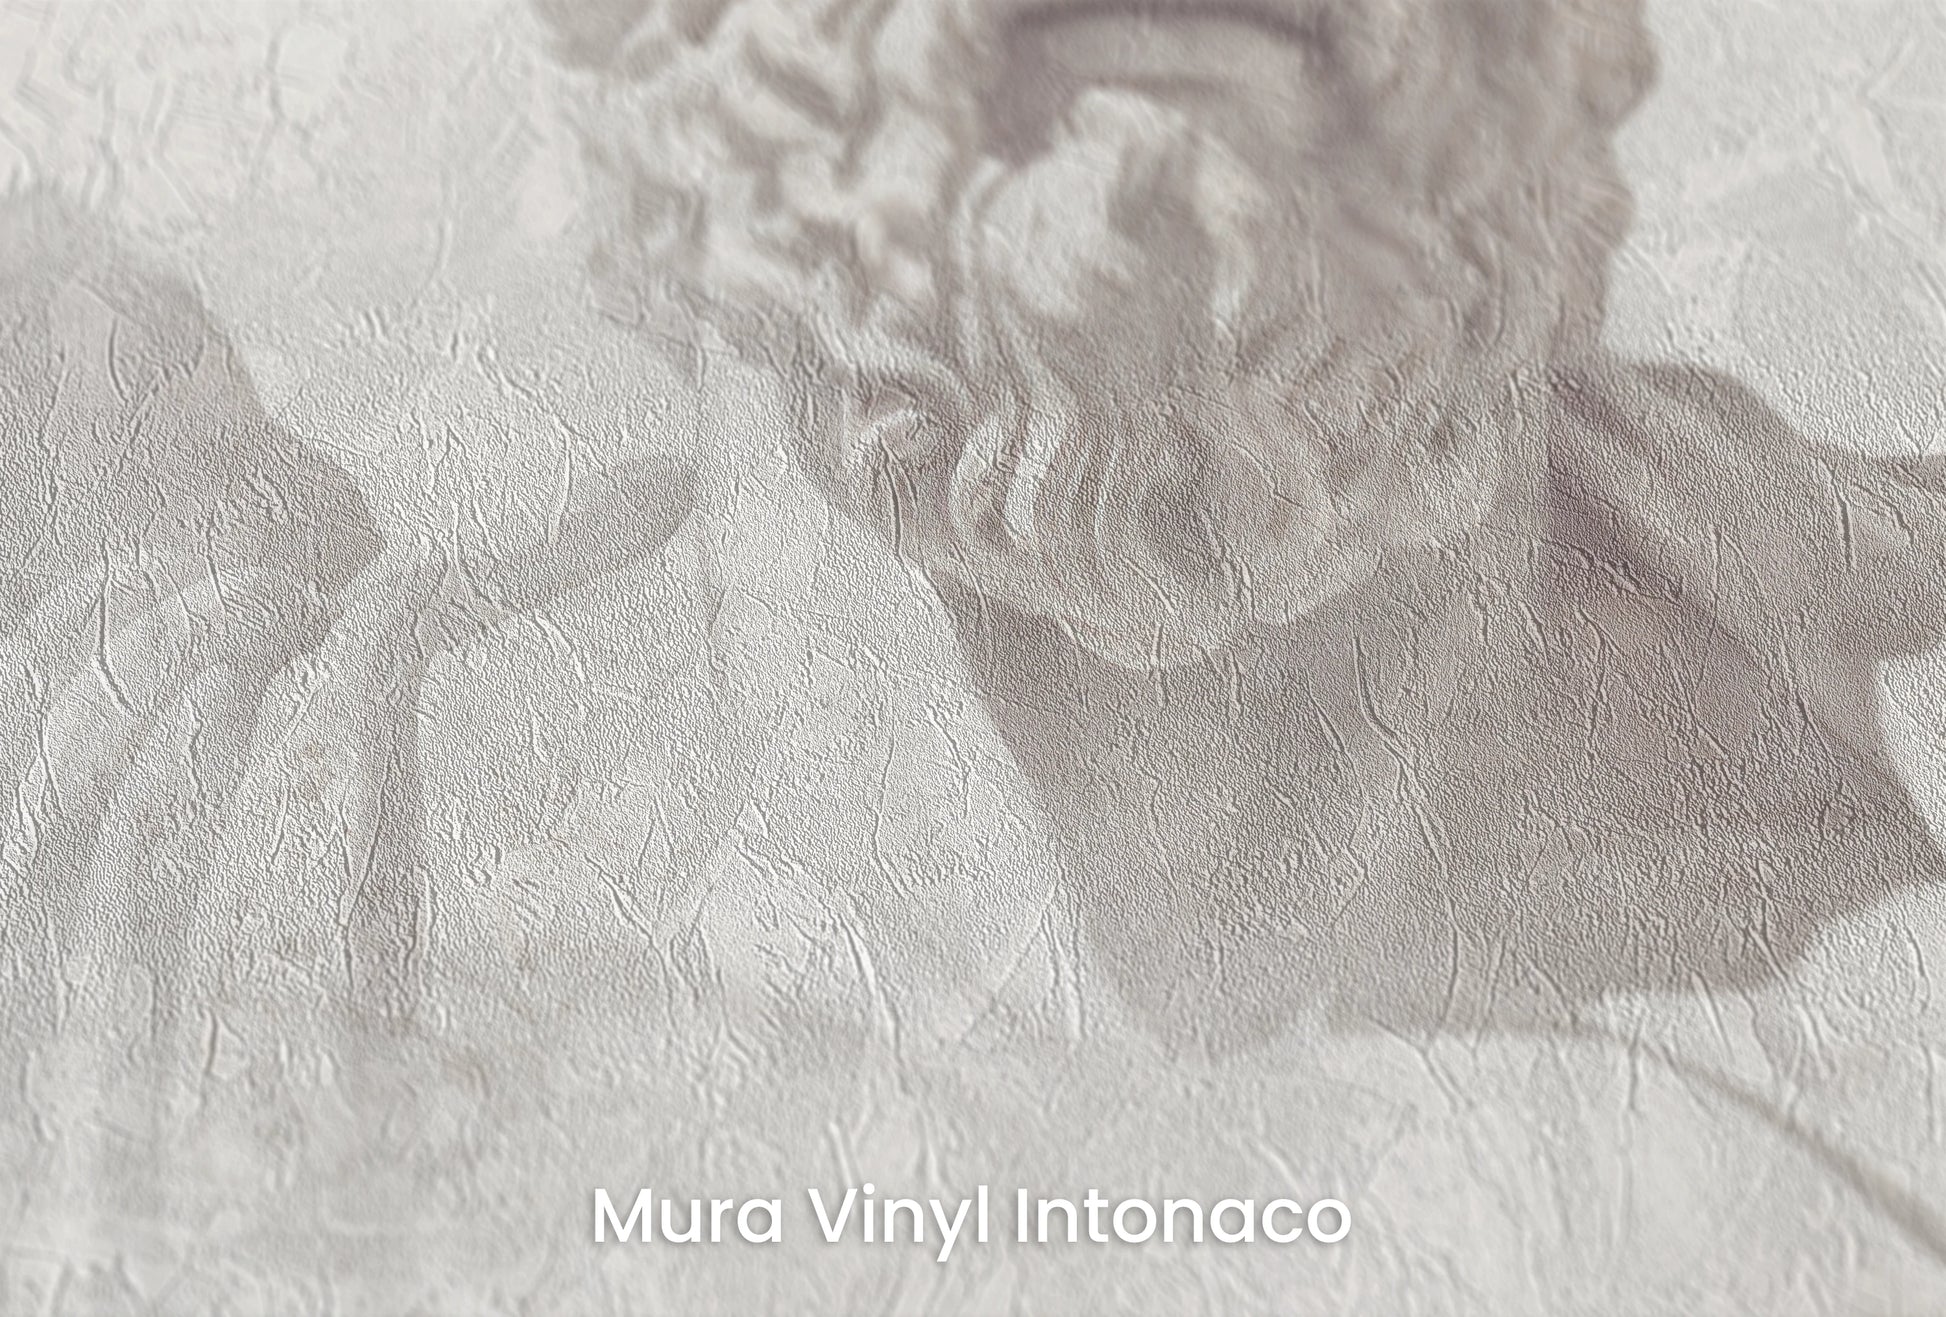 Zbliżenie na artystyczną fototapetę o nazwie Stoic Wisdom Revisited na podłożu Mura Vinyl Intonaco - struktura tartego tynku.